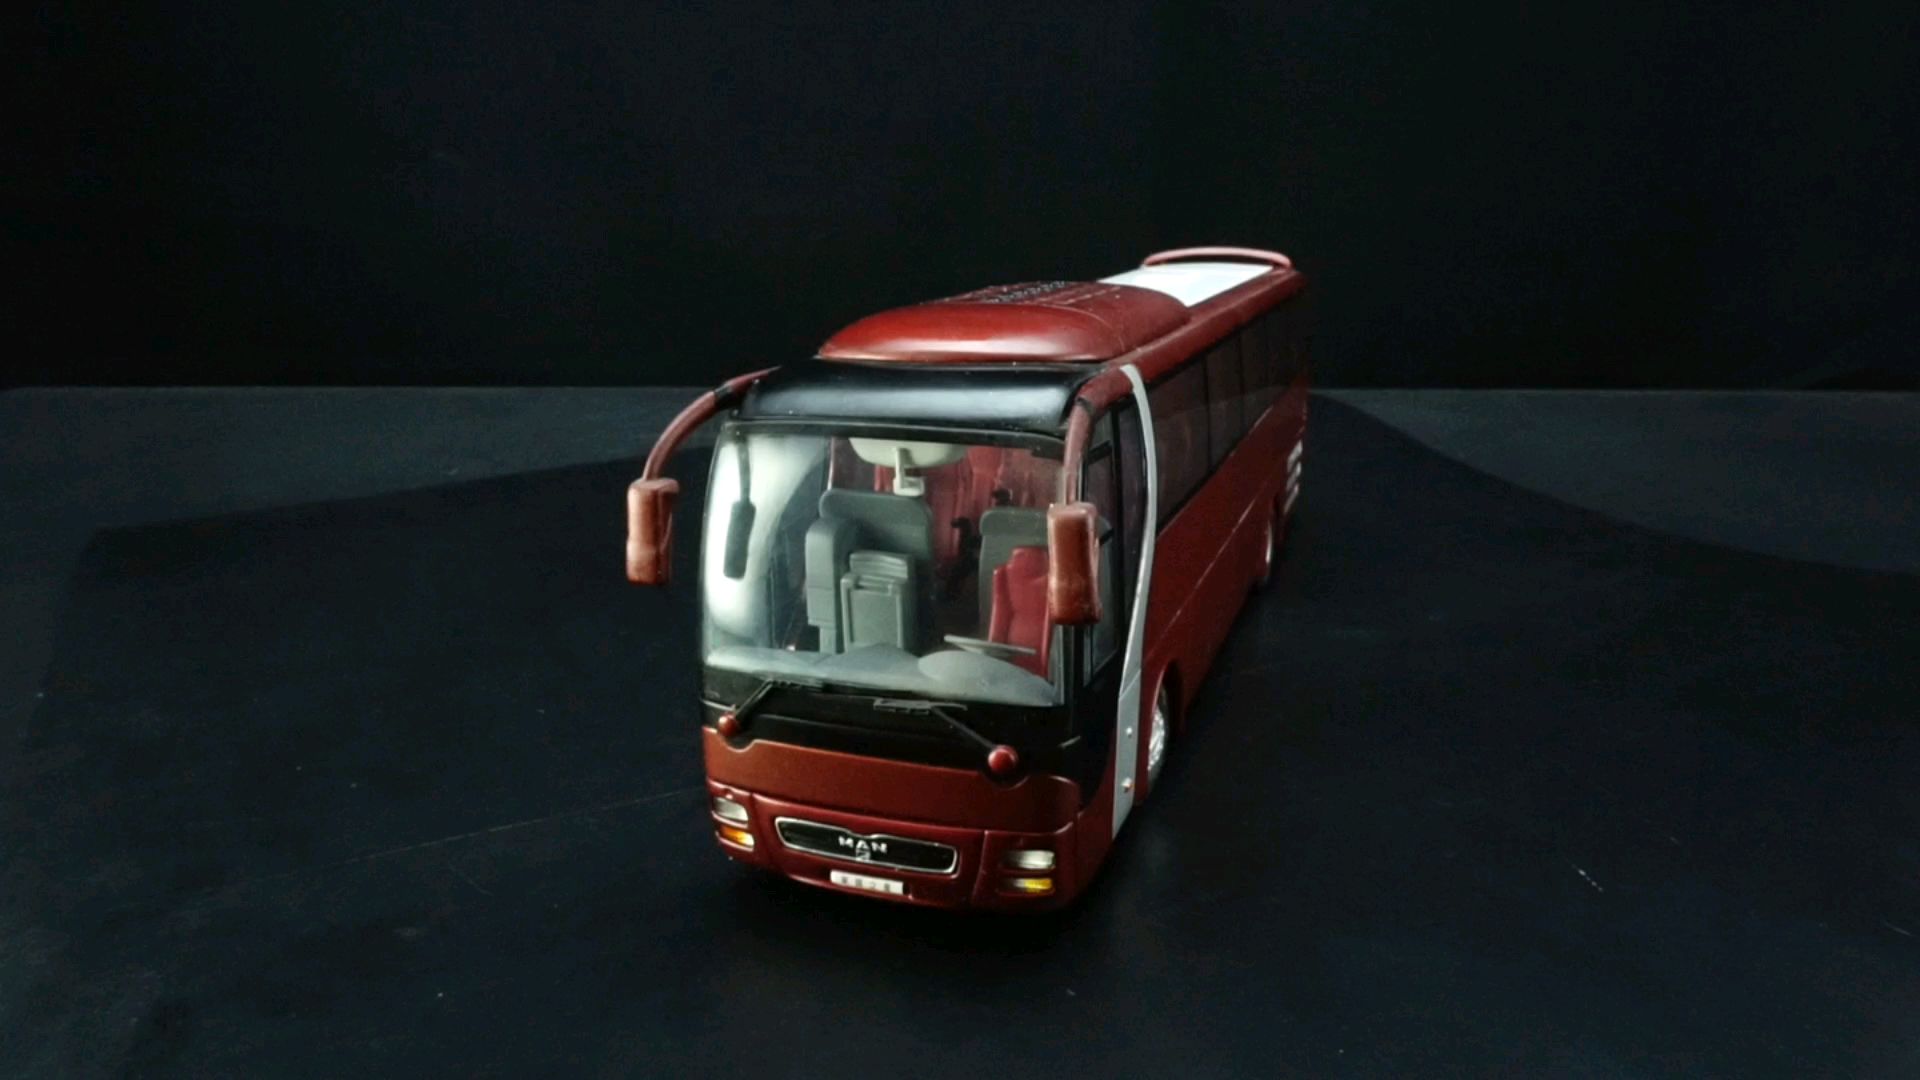 2003宇通猛狮莱茵之星巴士1：42，东晓汽车模型收藏馆藏品